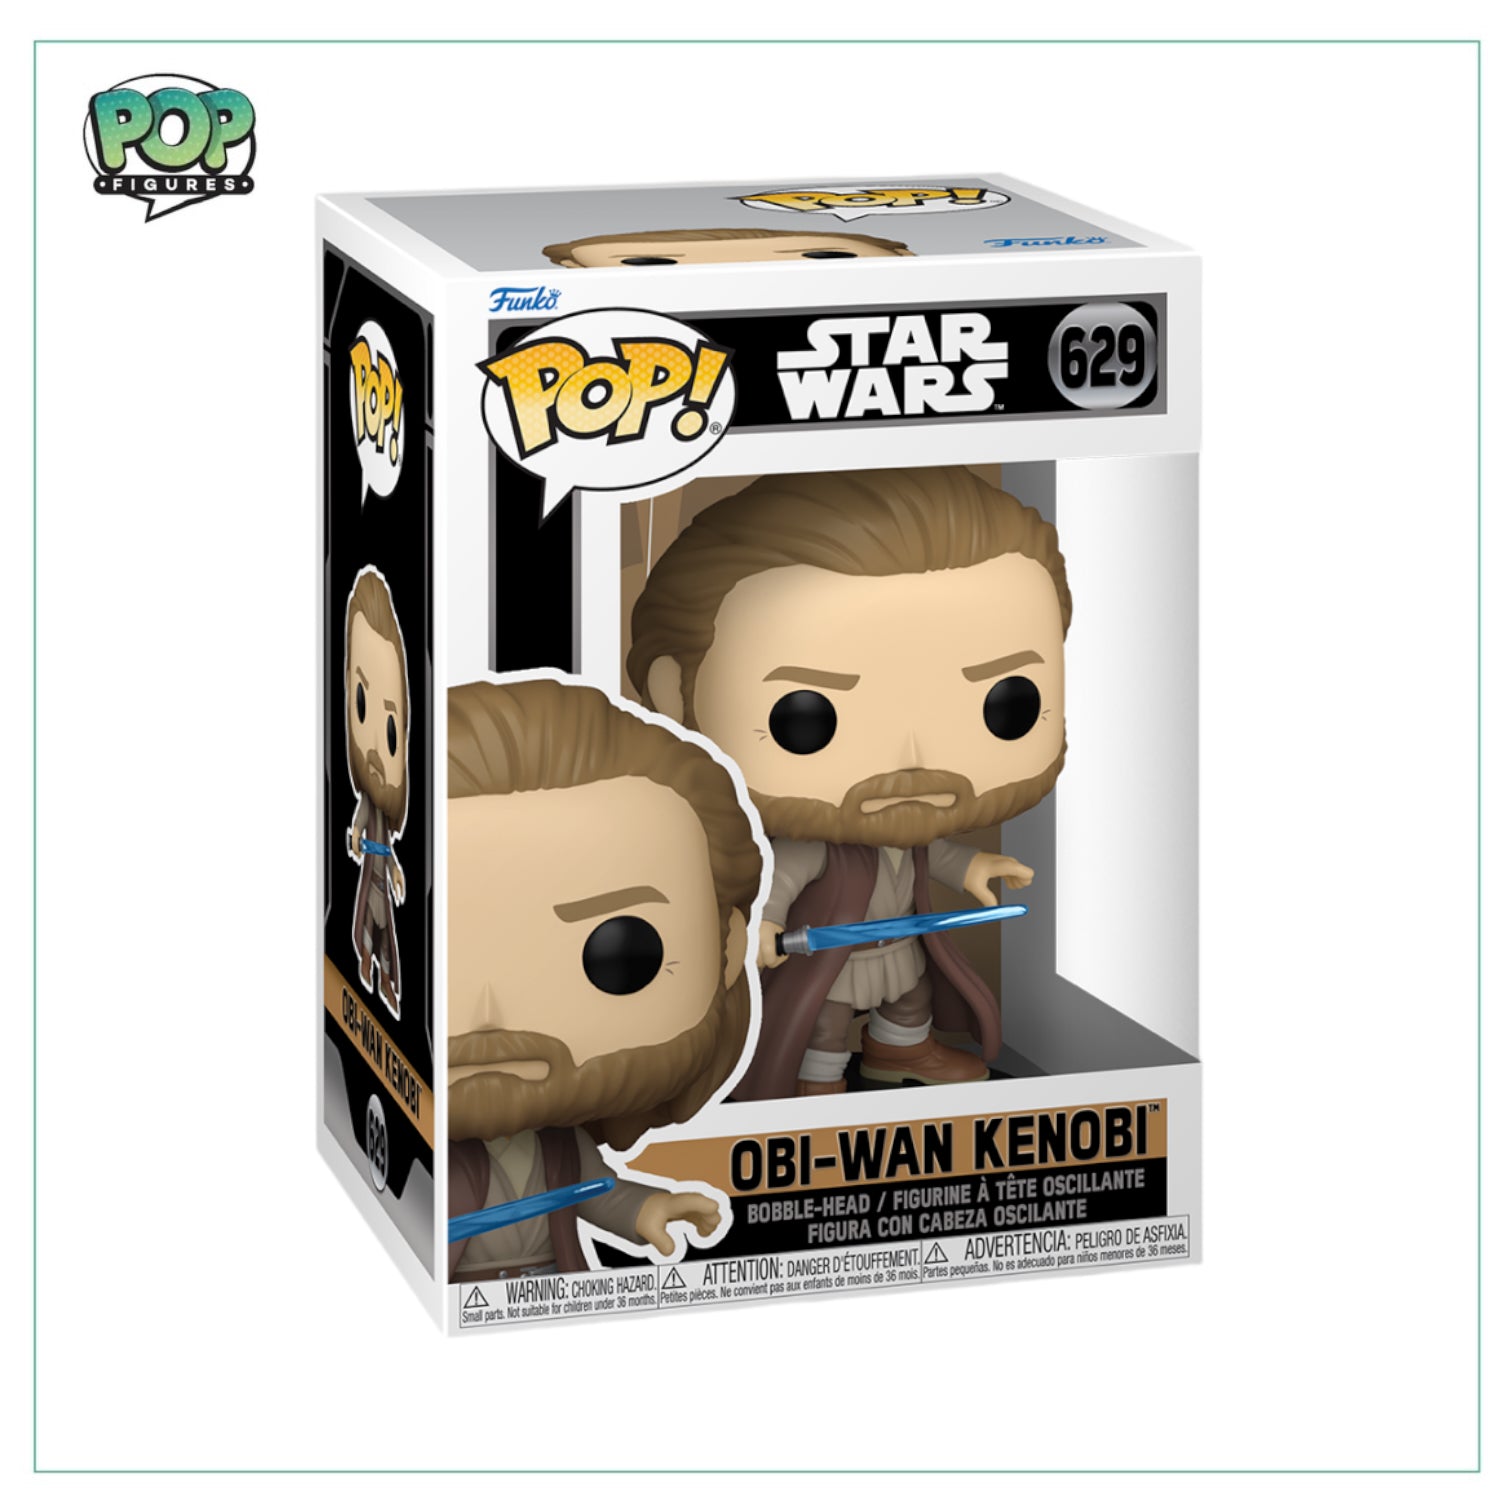 Obi-Wan Kenobi #629 Funko Pop! Star Wars Obi-Wan Kenobi